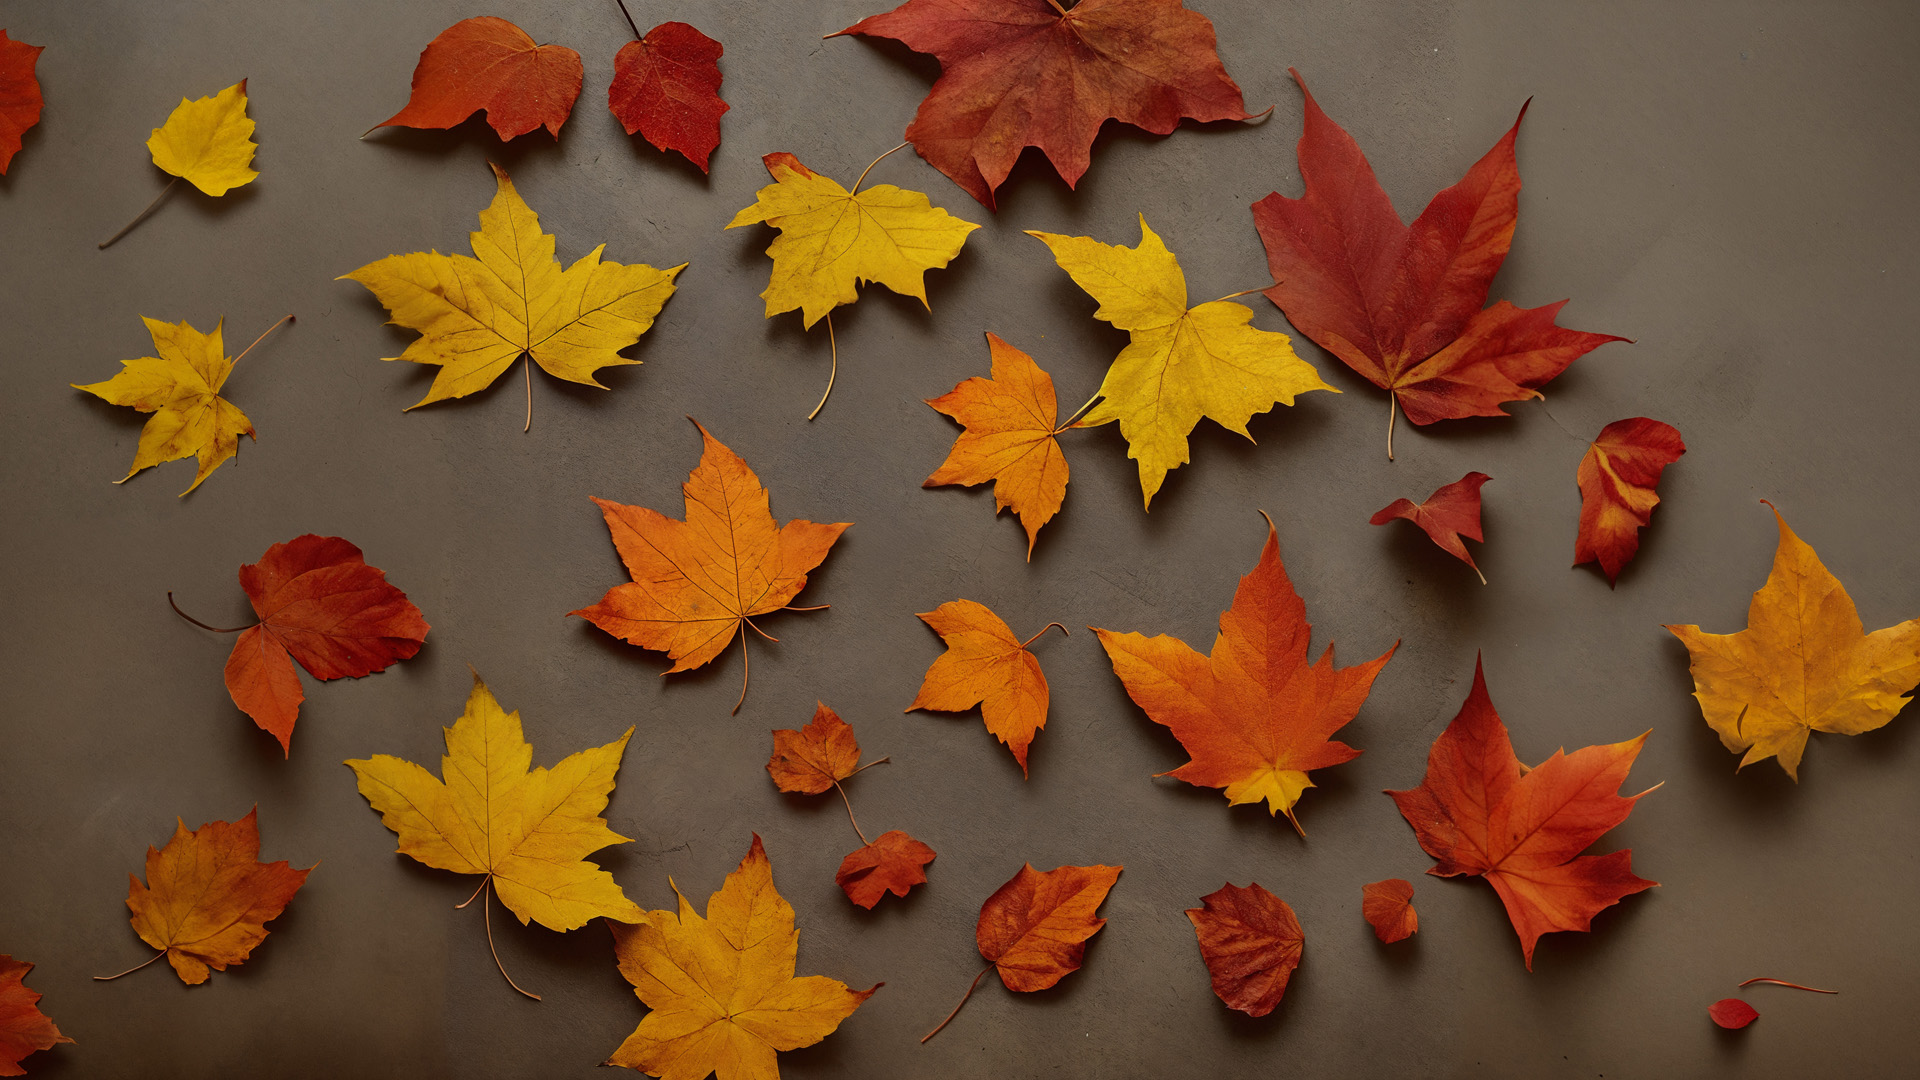 liście, jesień, podłoga, brak drzew, równomiernie rozrzucone, czerwień, pomarańcz, złoto, kompozycja, kontrast, sugestia, jednolite tło